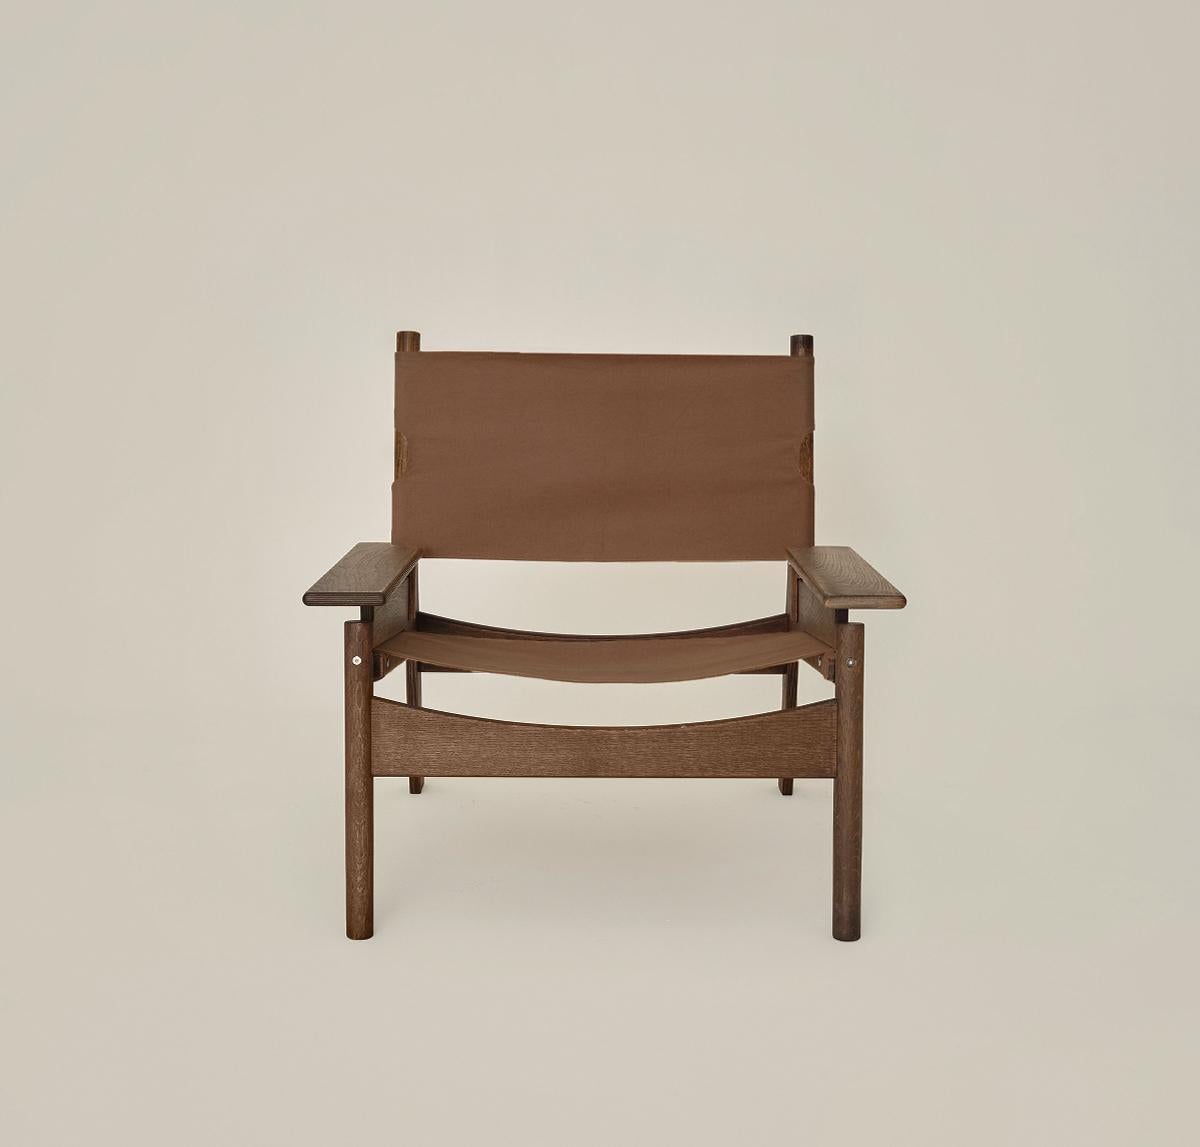 Inspiré par les formes sculpturales, Frame Lounge Chair est un siège au design plus large et plus bas qui offre une sensation de cocon à la personne qui s'y enfonce.
Avec l'idée de créer un fauteuil douillet qui assure la liberté du corps, il